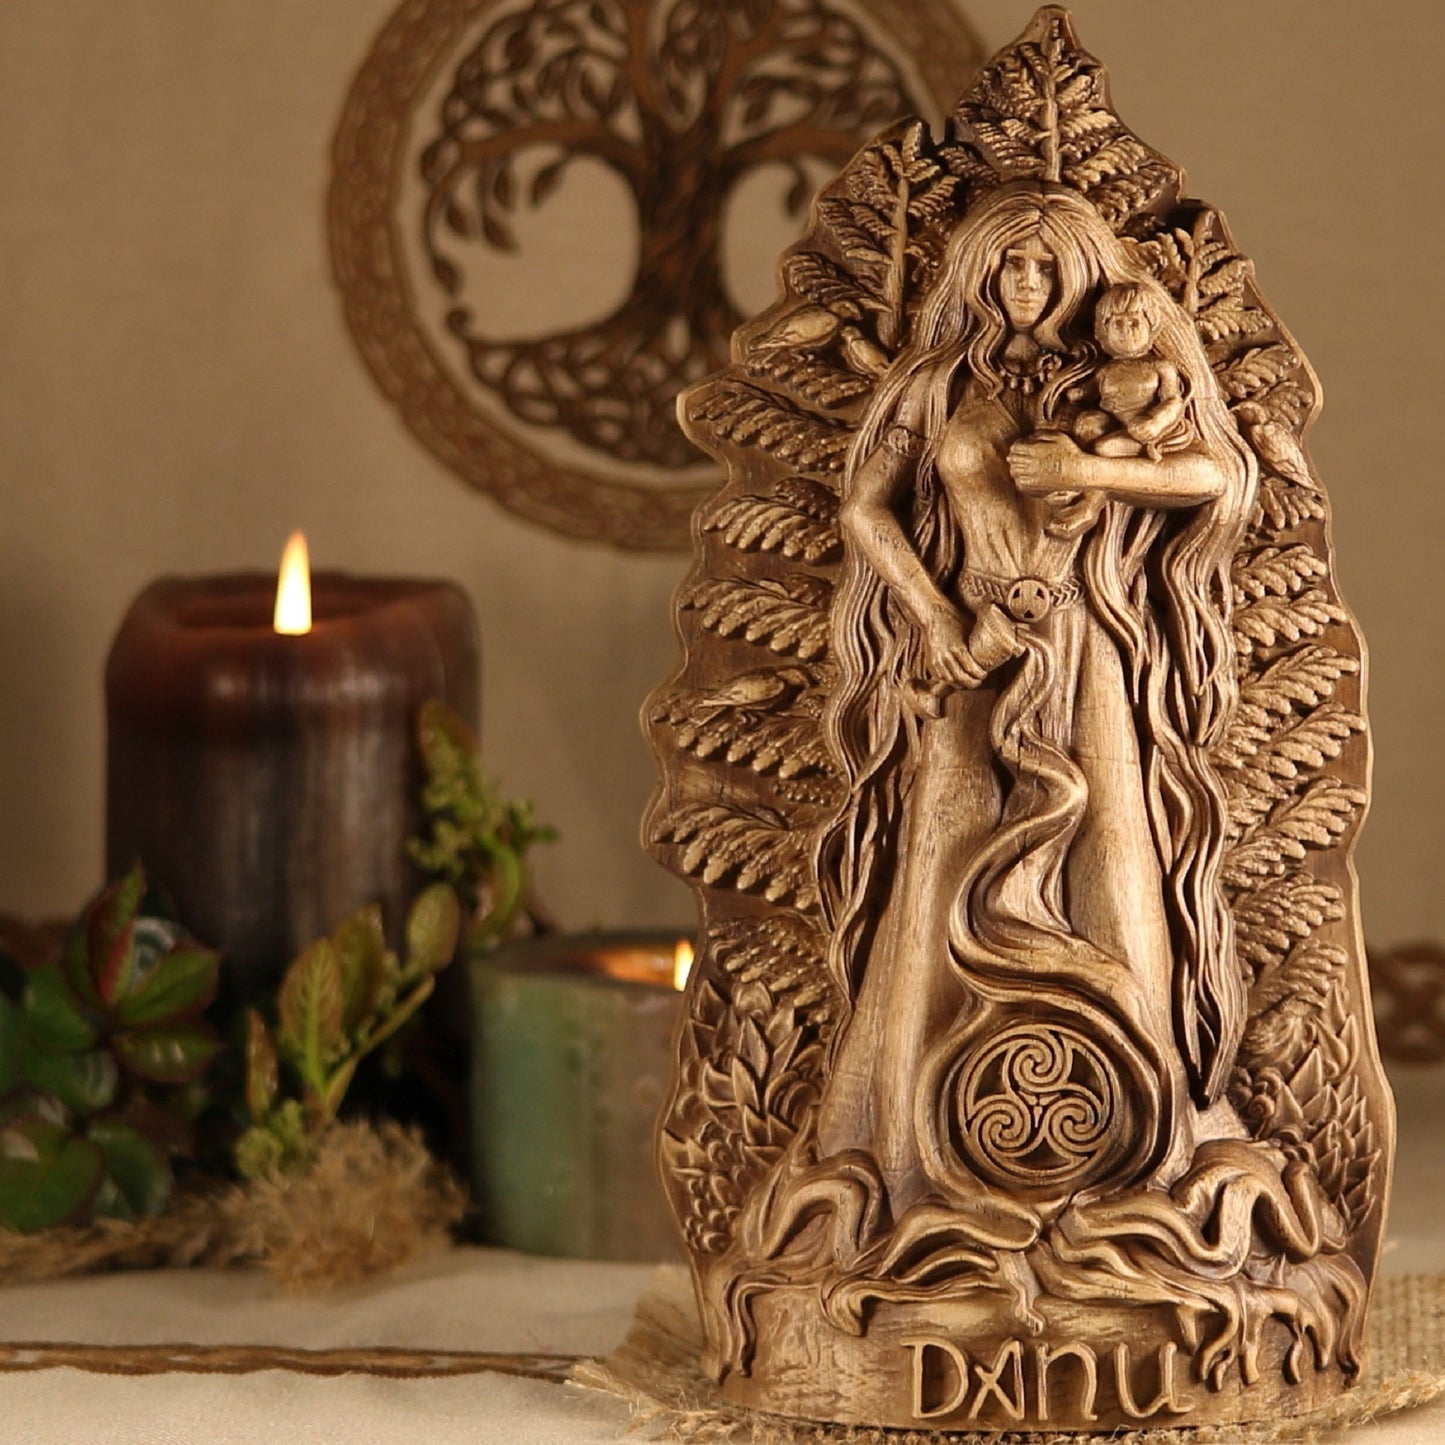 Wooden Danu Statue - Fertility Goddess Sculpture